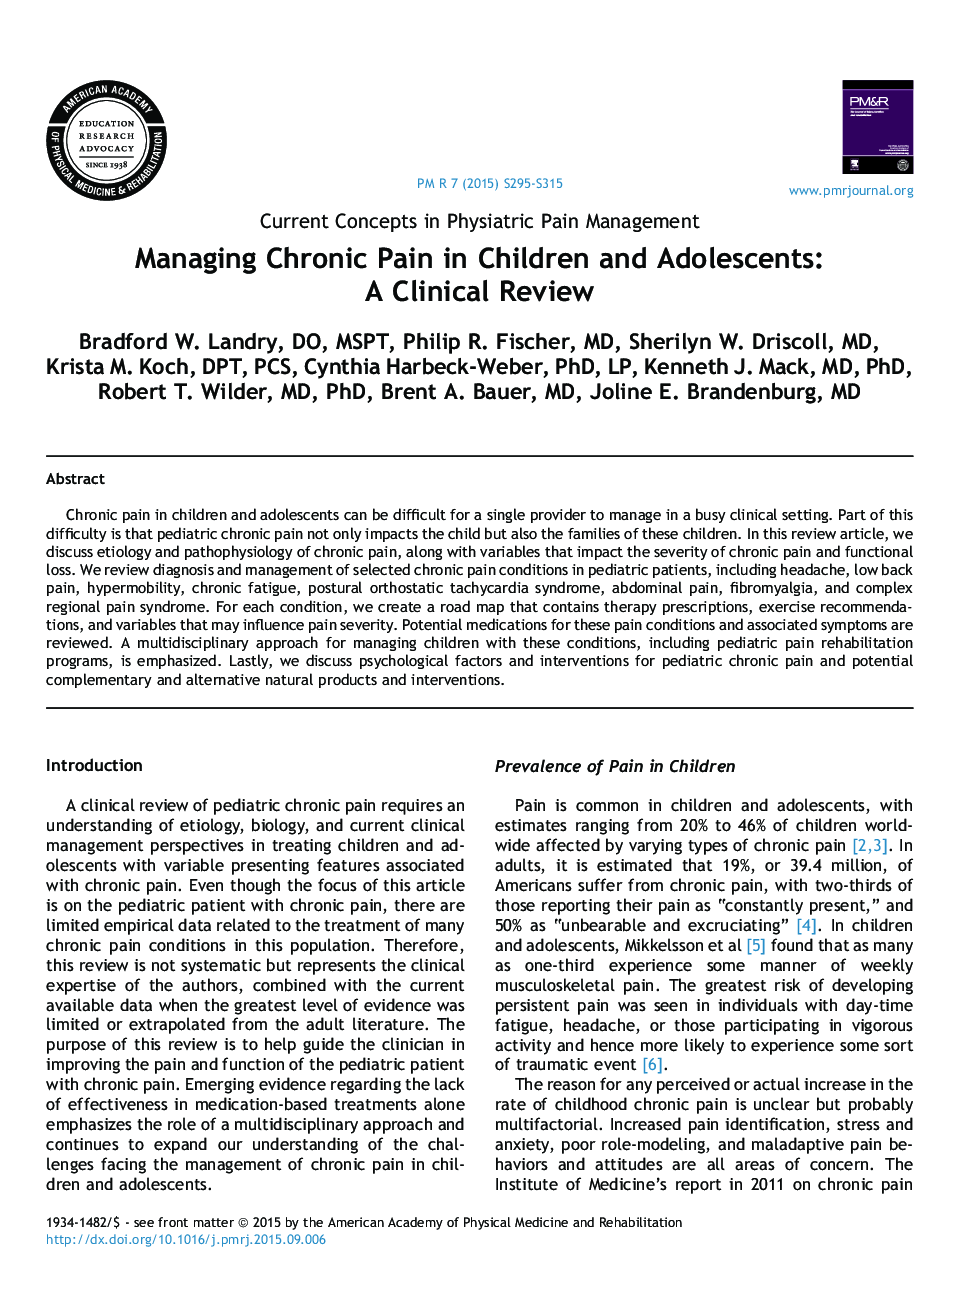 مدیریت درد مزمن در کودکان و نوجوانان: یک بررسی بالینی 